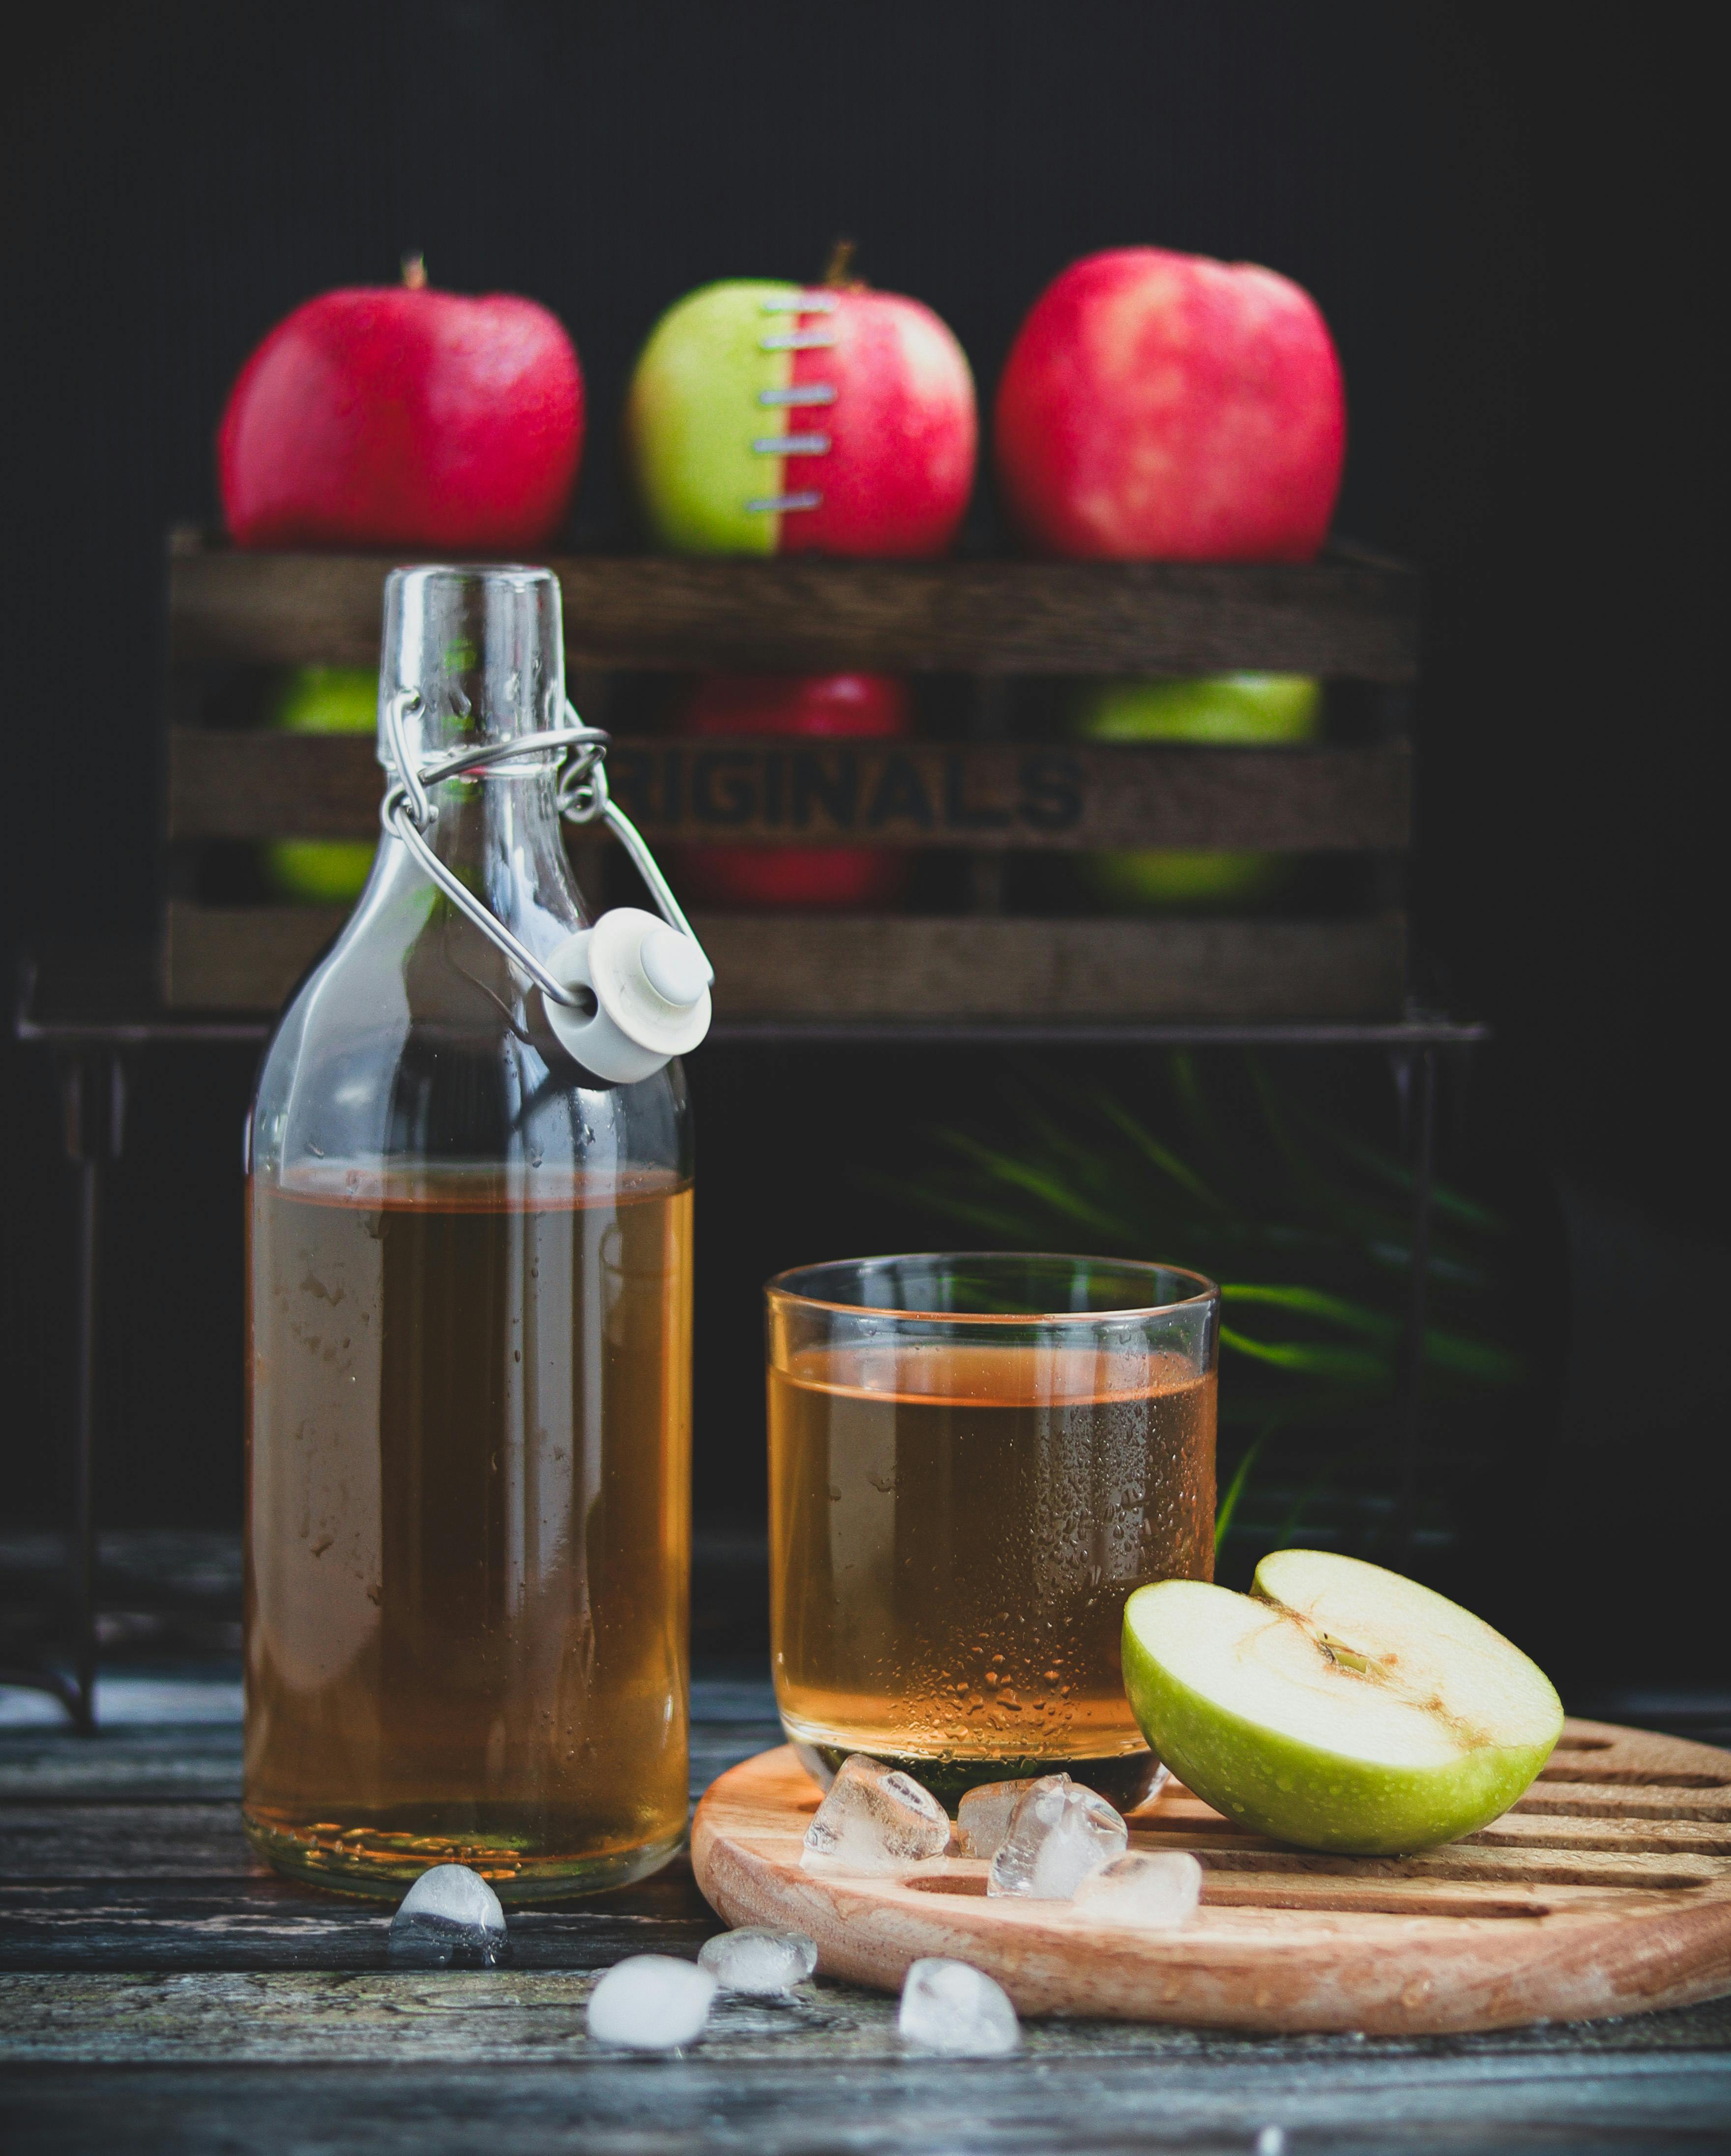 Have You Tried This Amazing Plant Fix Plix Apple Cider Vinegar?